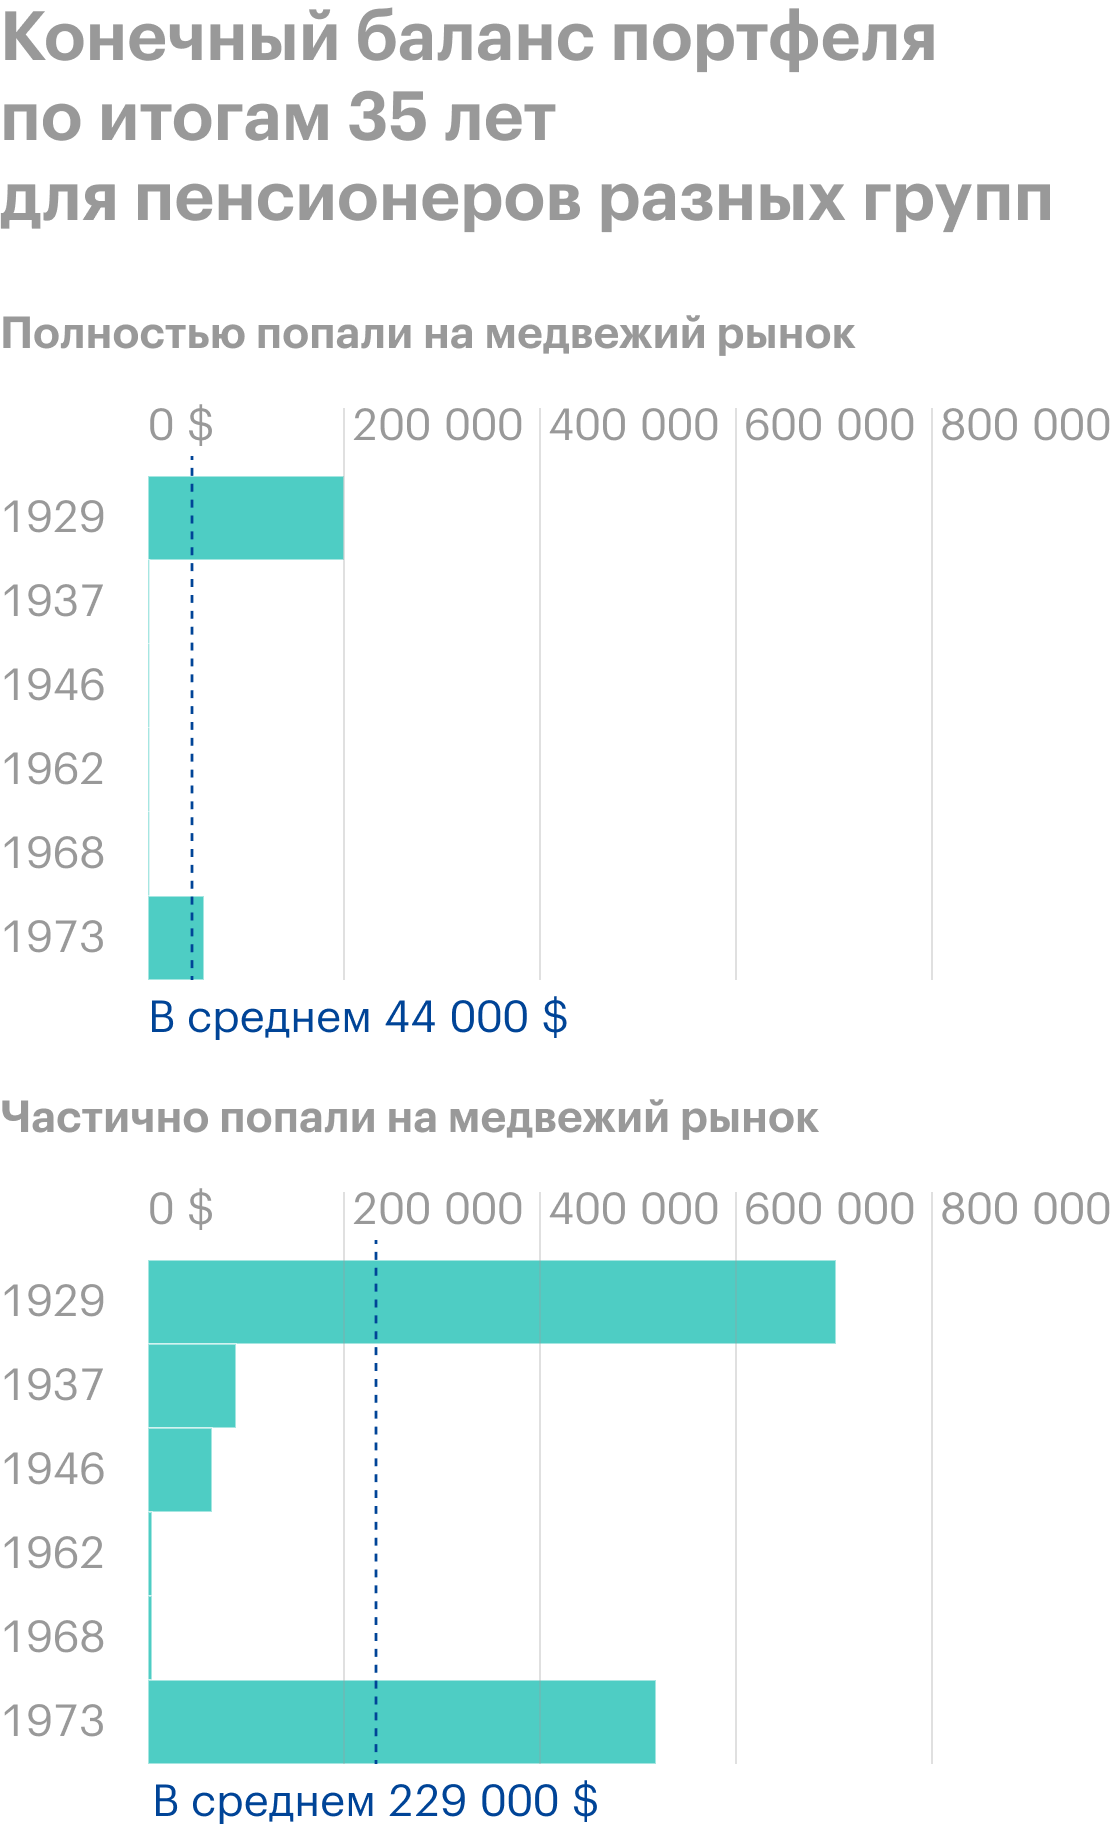 Конечный баланс портфеля по итогам 35 лет для пенсионеров, попавших на медвежий рынок полностью или частично. Средние значения — 44 000 (3 305 786 ₽) и 229 000 $ (17 137 330 ₽) соответственно. Оба показателя понижены медвежьими рынками 1962 и 1968 годов, когда все пенсионные портфели преждевременно исчерпались. В остальных ситуациях наблюдается большая разница в конечном балансе между двумя группами пенсионеров. Источник: Vanguard